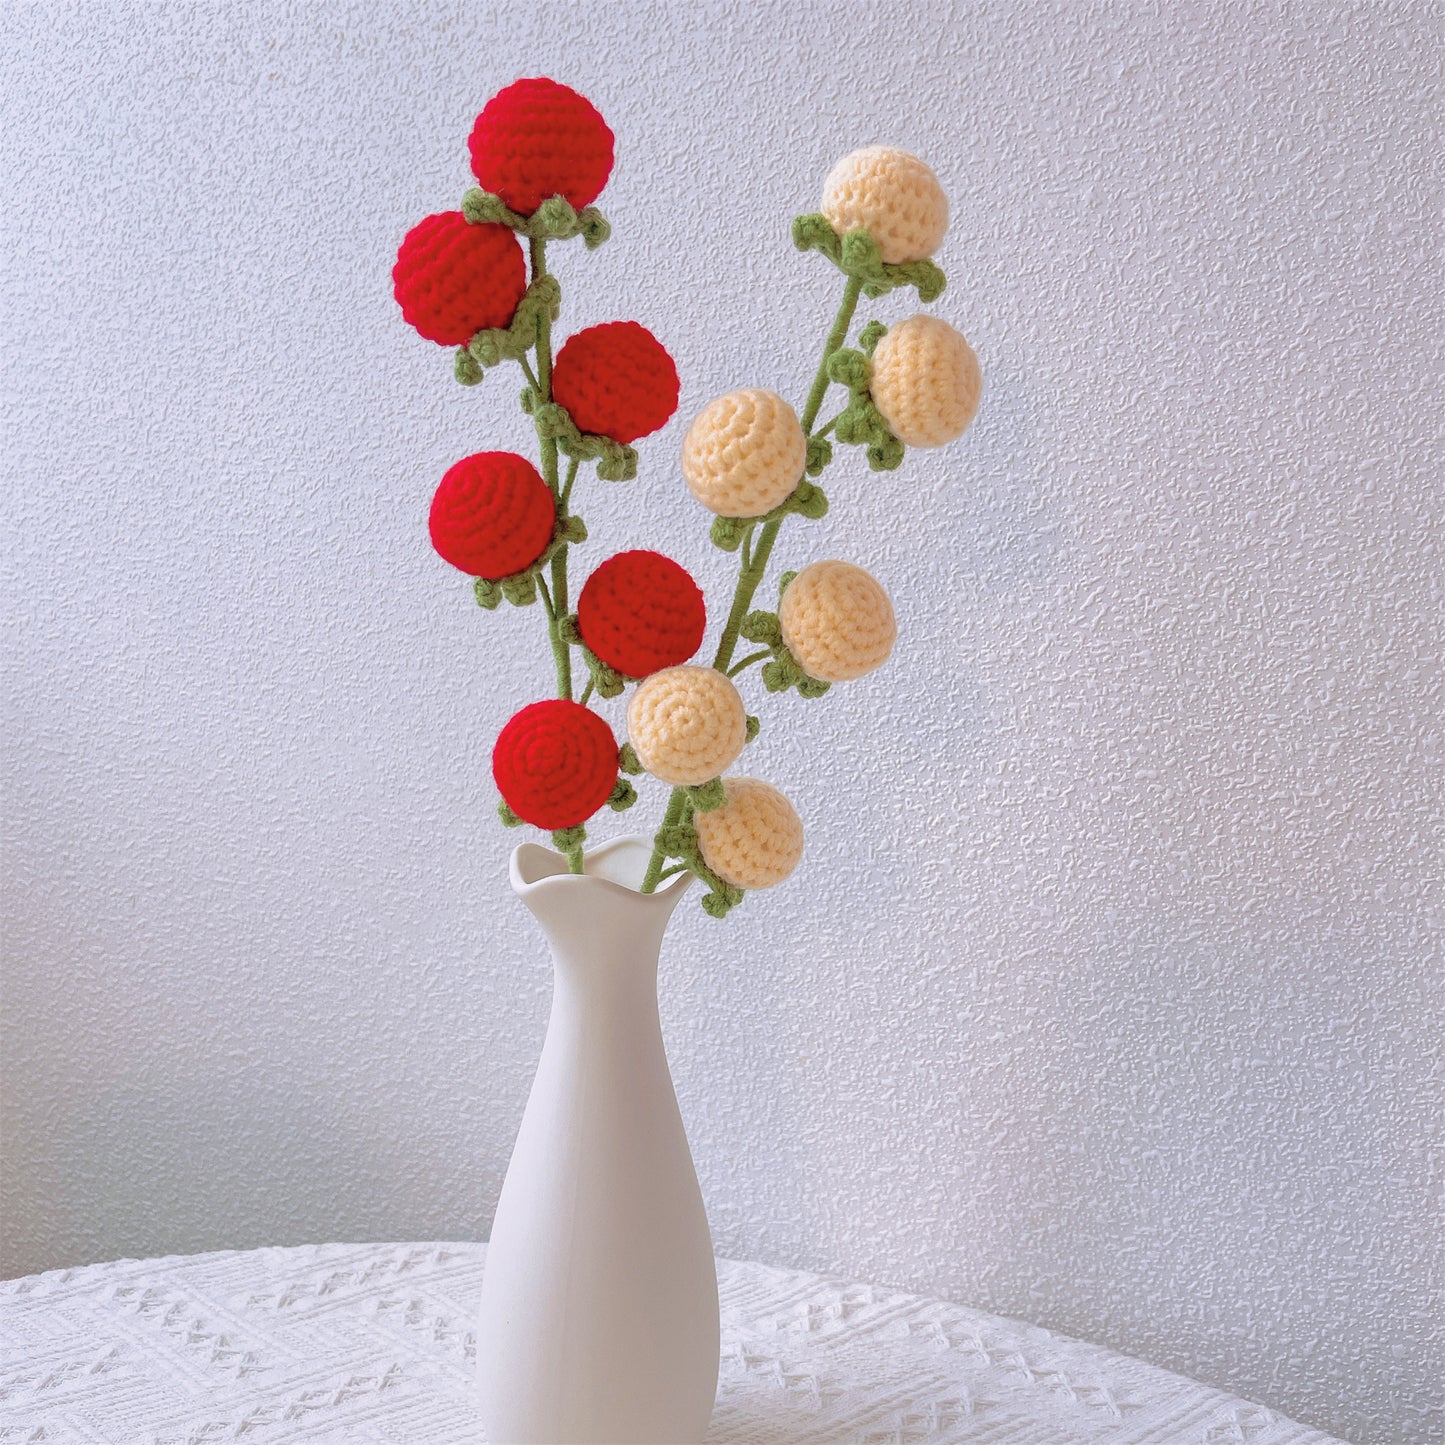 Tomato Trellis Blossom: Handcrafted Crochet Flower Stake for Vibrant Vine Gardens